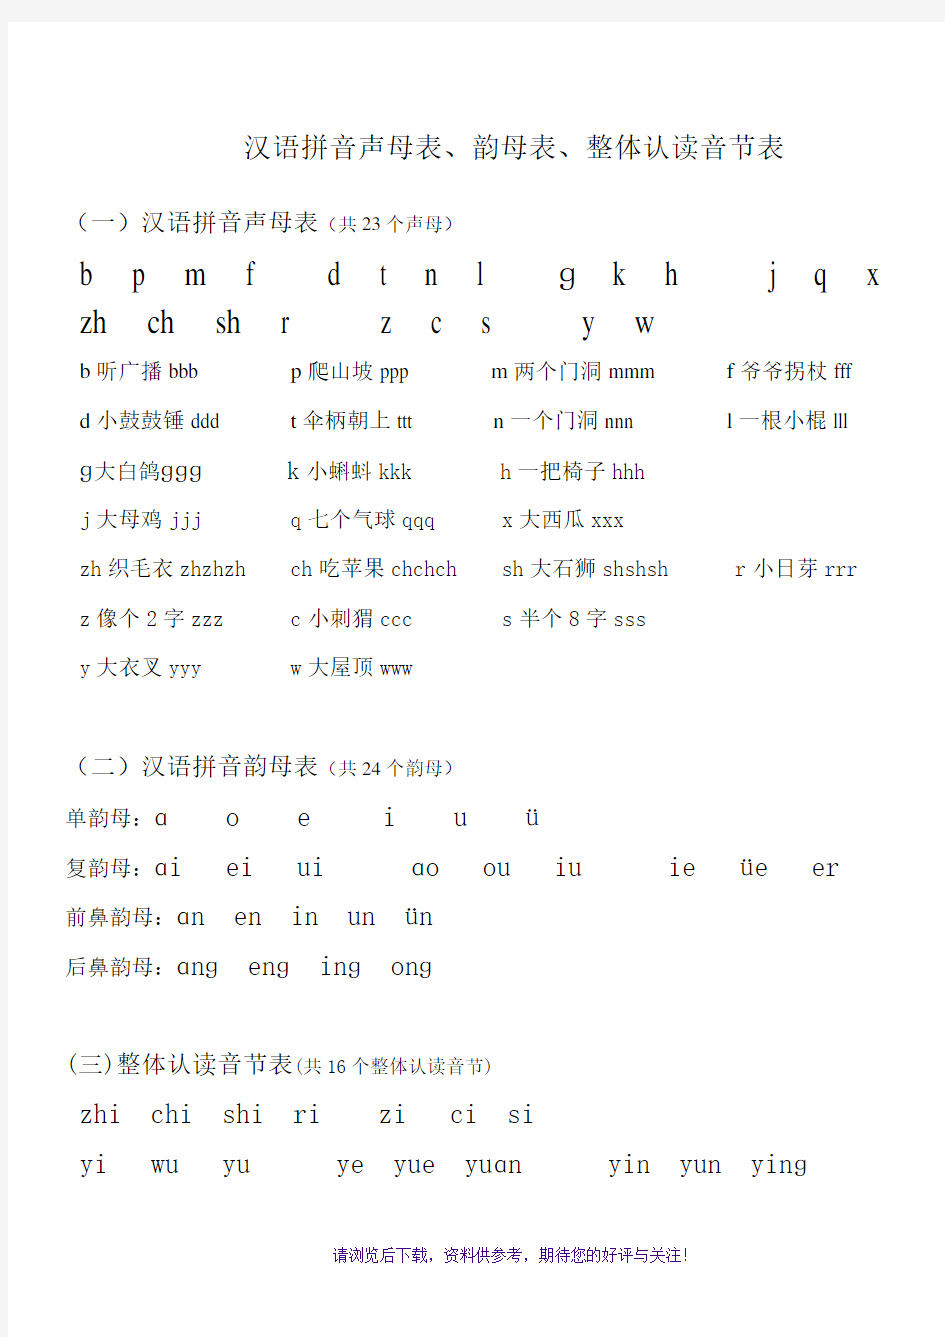 汉语拼音声母表、韵母表、整体认读音节表